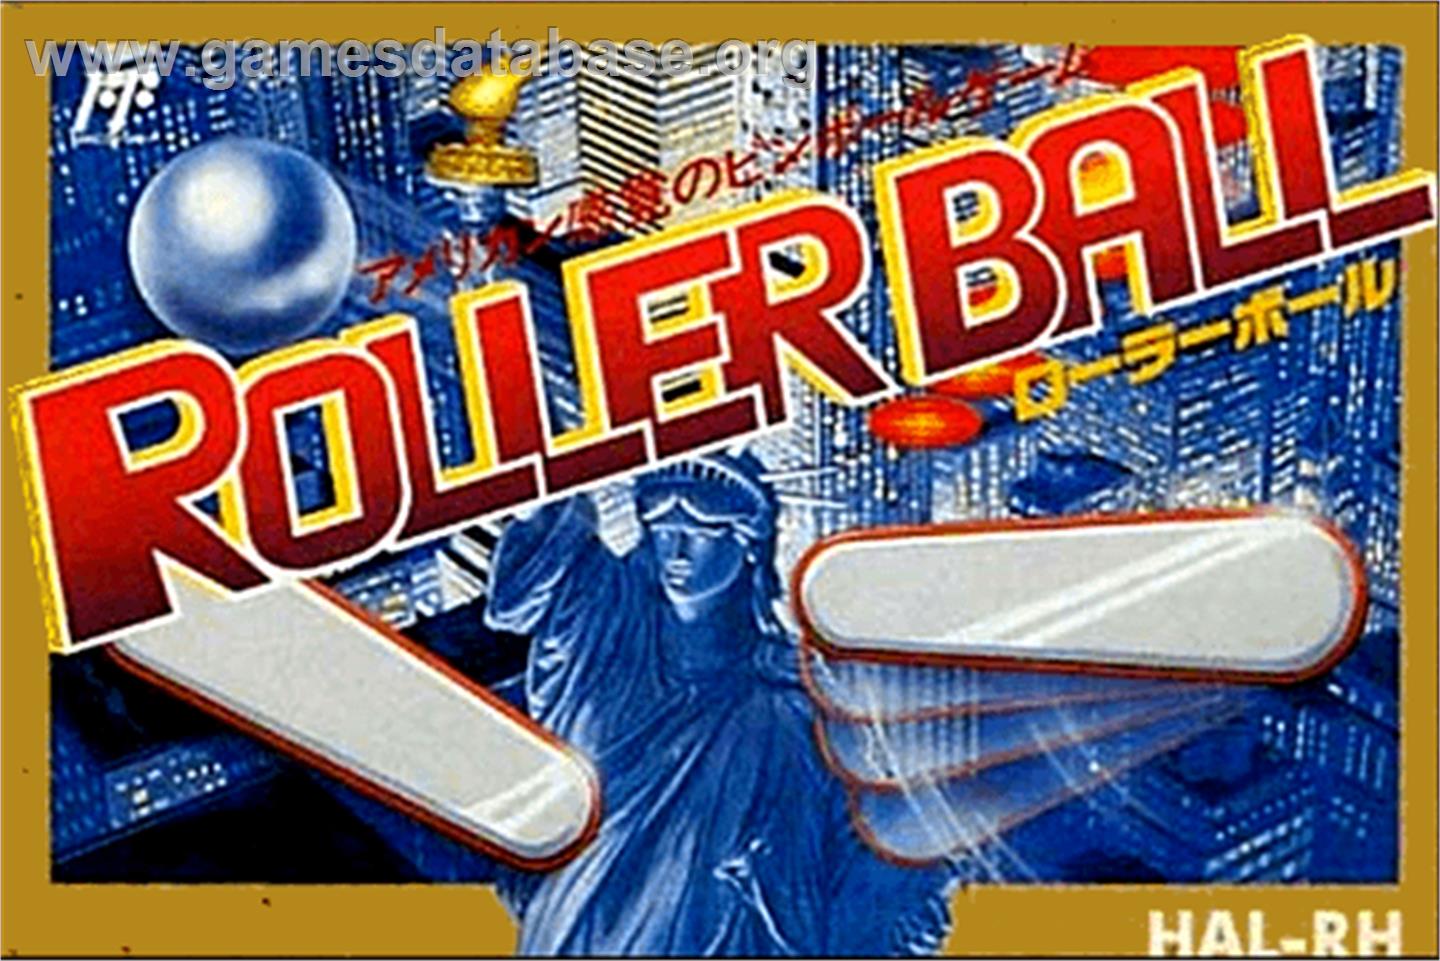 Roller Ball - Nintendo NES - Artwork - Box